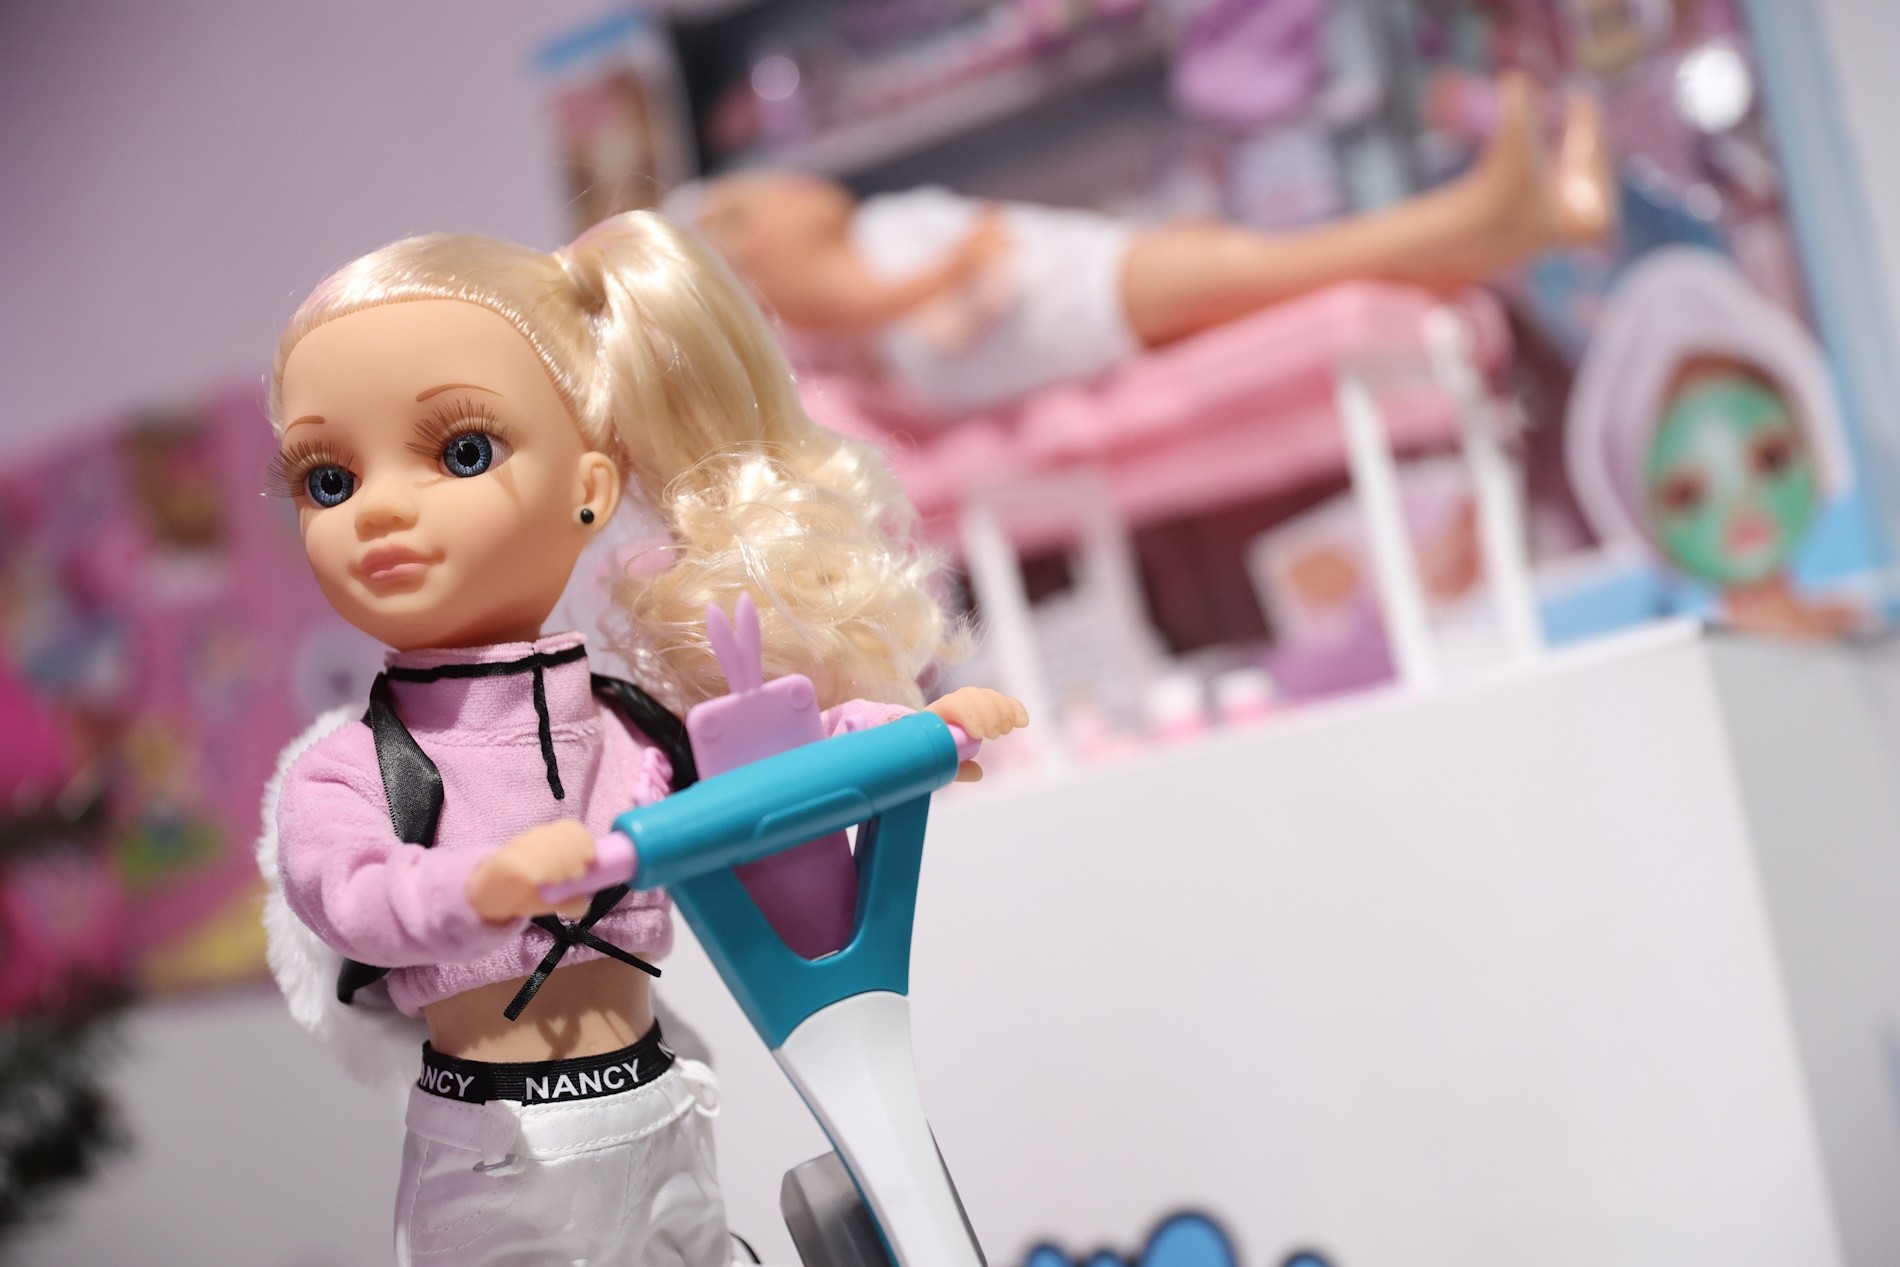 Las ventas de Nancy crecen un 30% y se posiciona como una de las marcas más vendidas del mercado de juguetes